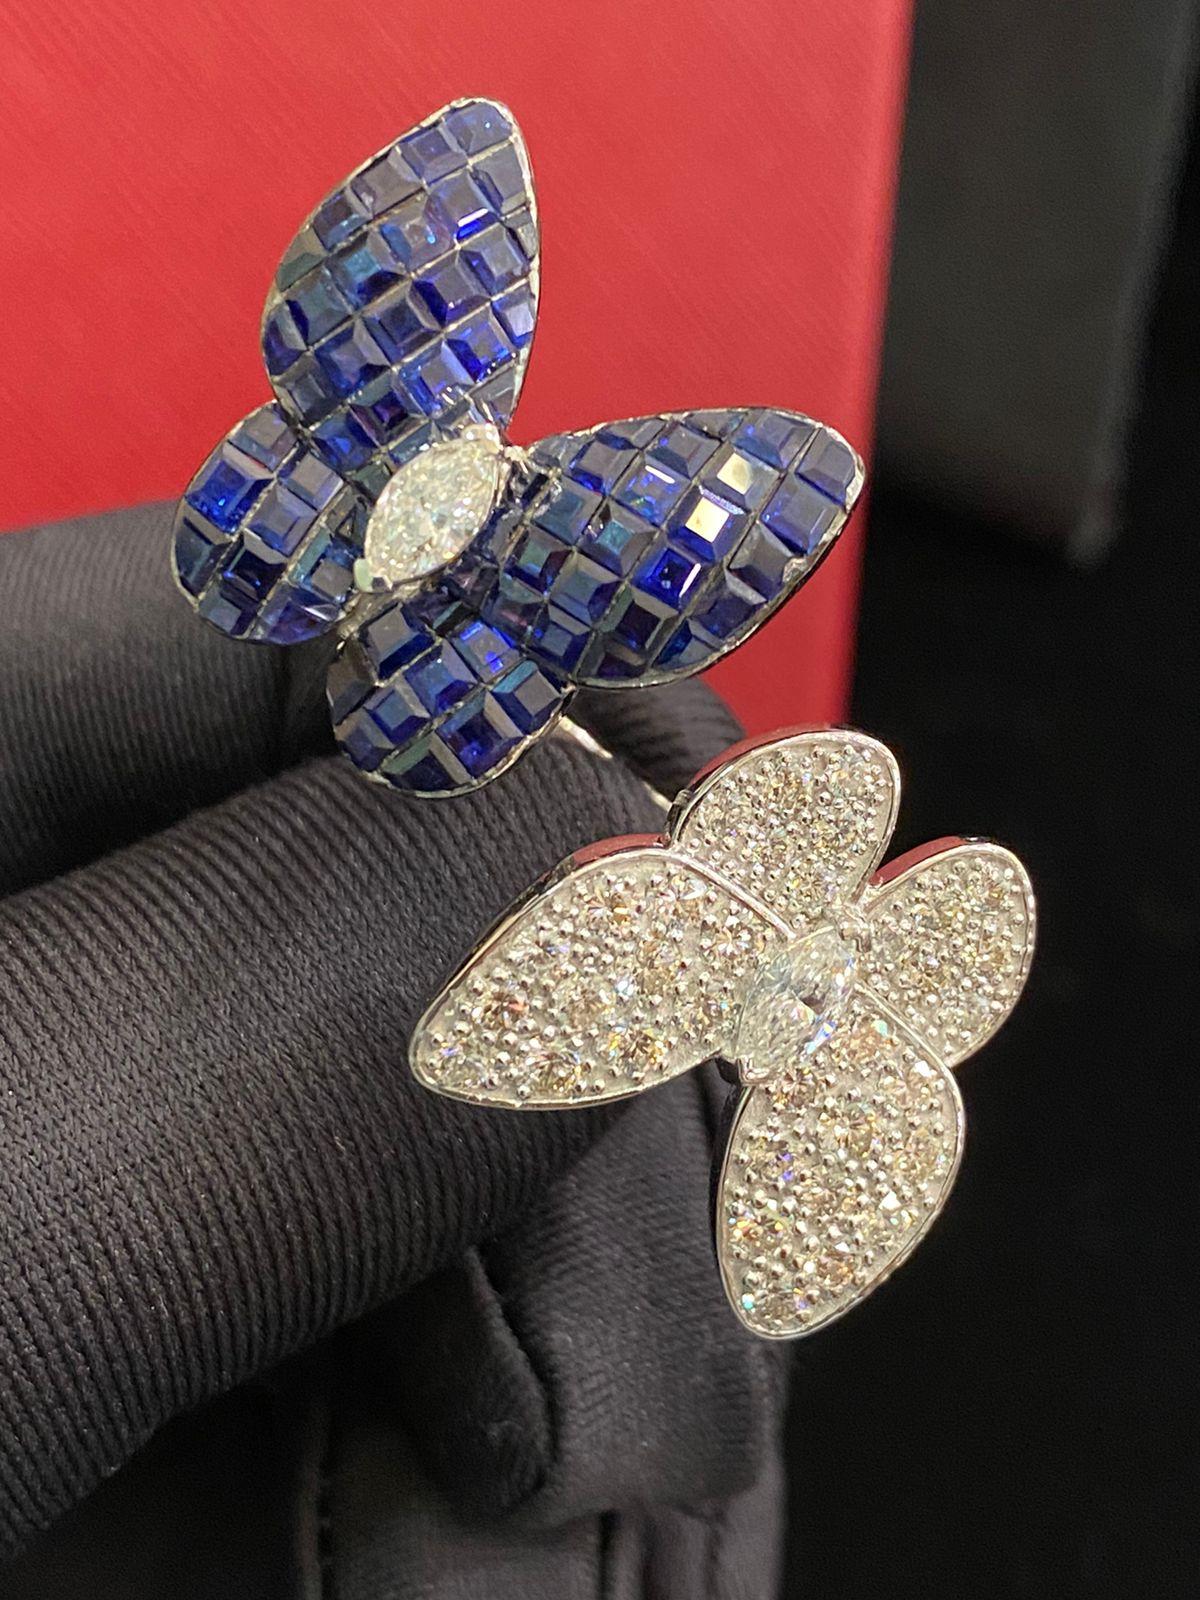 Magnifique motif de papillon en or 14 carats avec saphirs blu ct 6,50 et deux diamants taille marquise 0,66 ct G/SI, taille brillant rond 1,80 ct G/SI.
Bijoux faits à la main par un artisan orfèvre.
Fabrication et qualité excellentes.